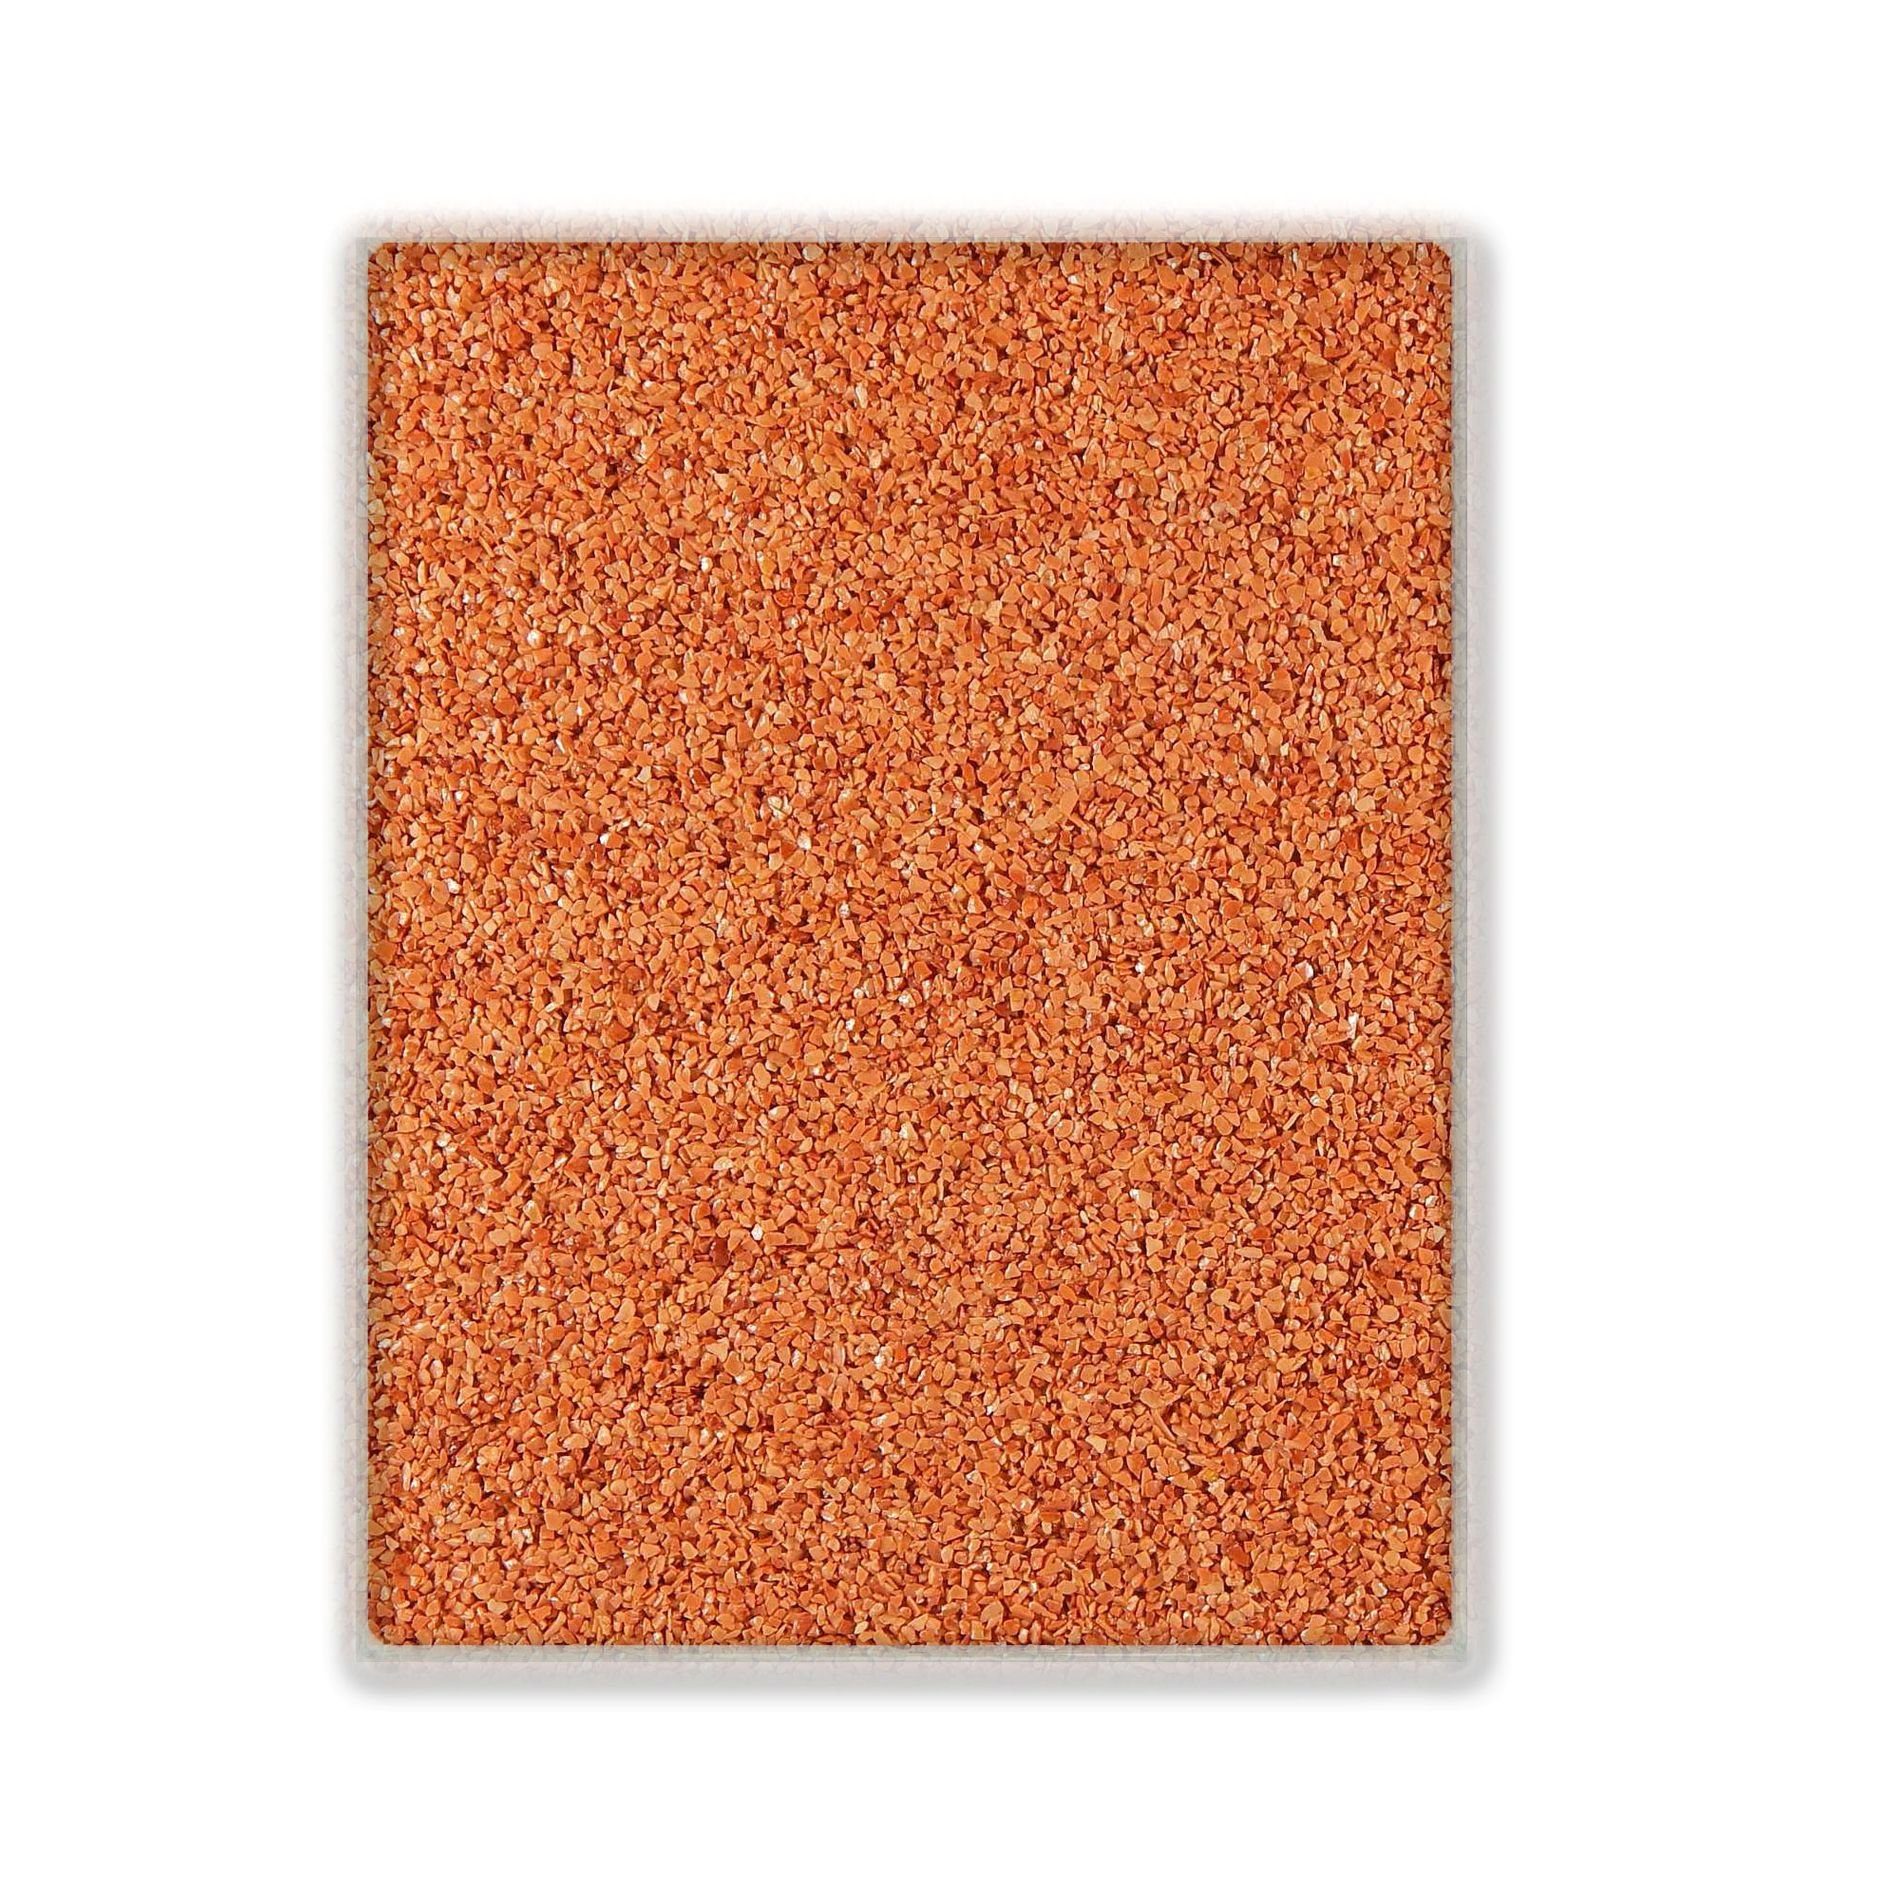 Terralith® Designboden Farbmuster Kompaktboden -rosso-, Originalware aus der Charge, die wir in diesem Moment im Abverkauf haben.